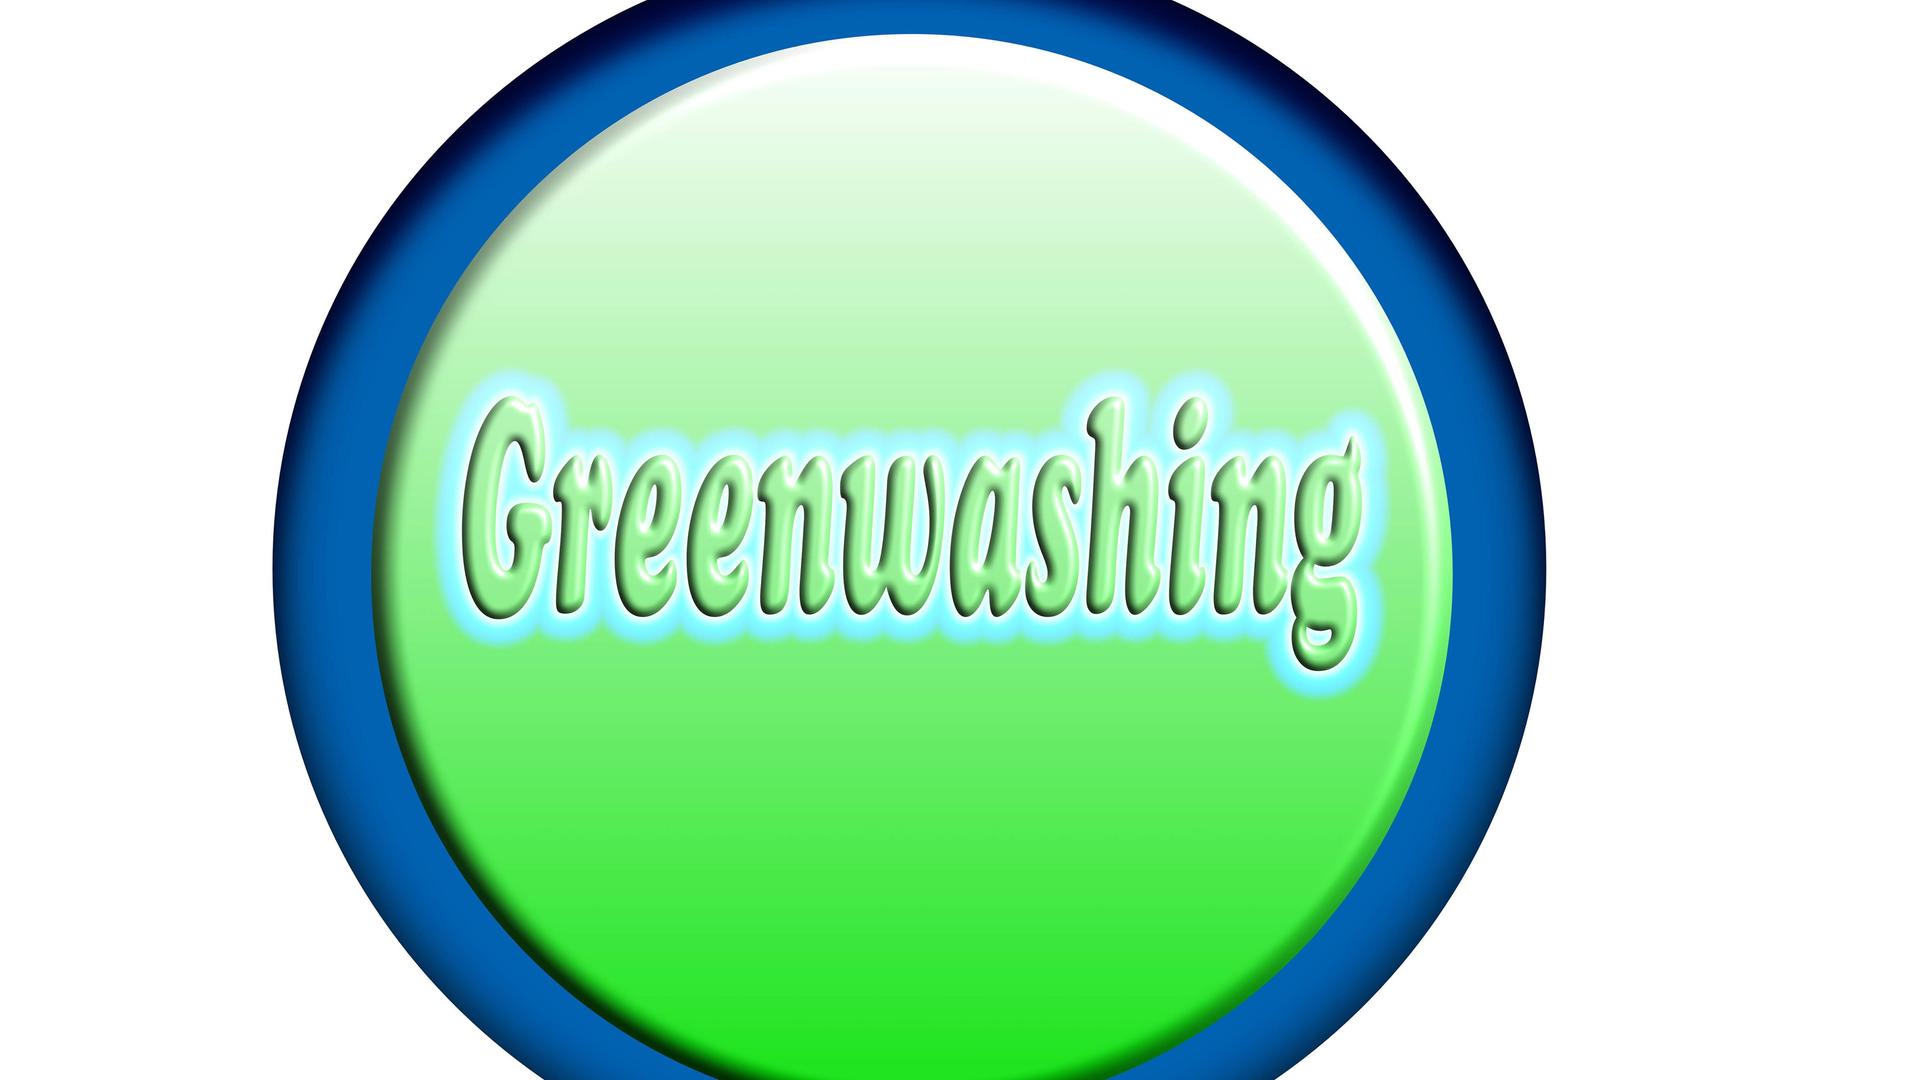 Ein Kreis mit blauem Rand, in dem auf dunklerem grünen Untergrund in hellerem Grün das Wort "Greenwashing" steht.